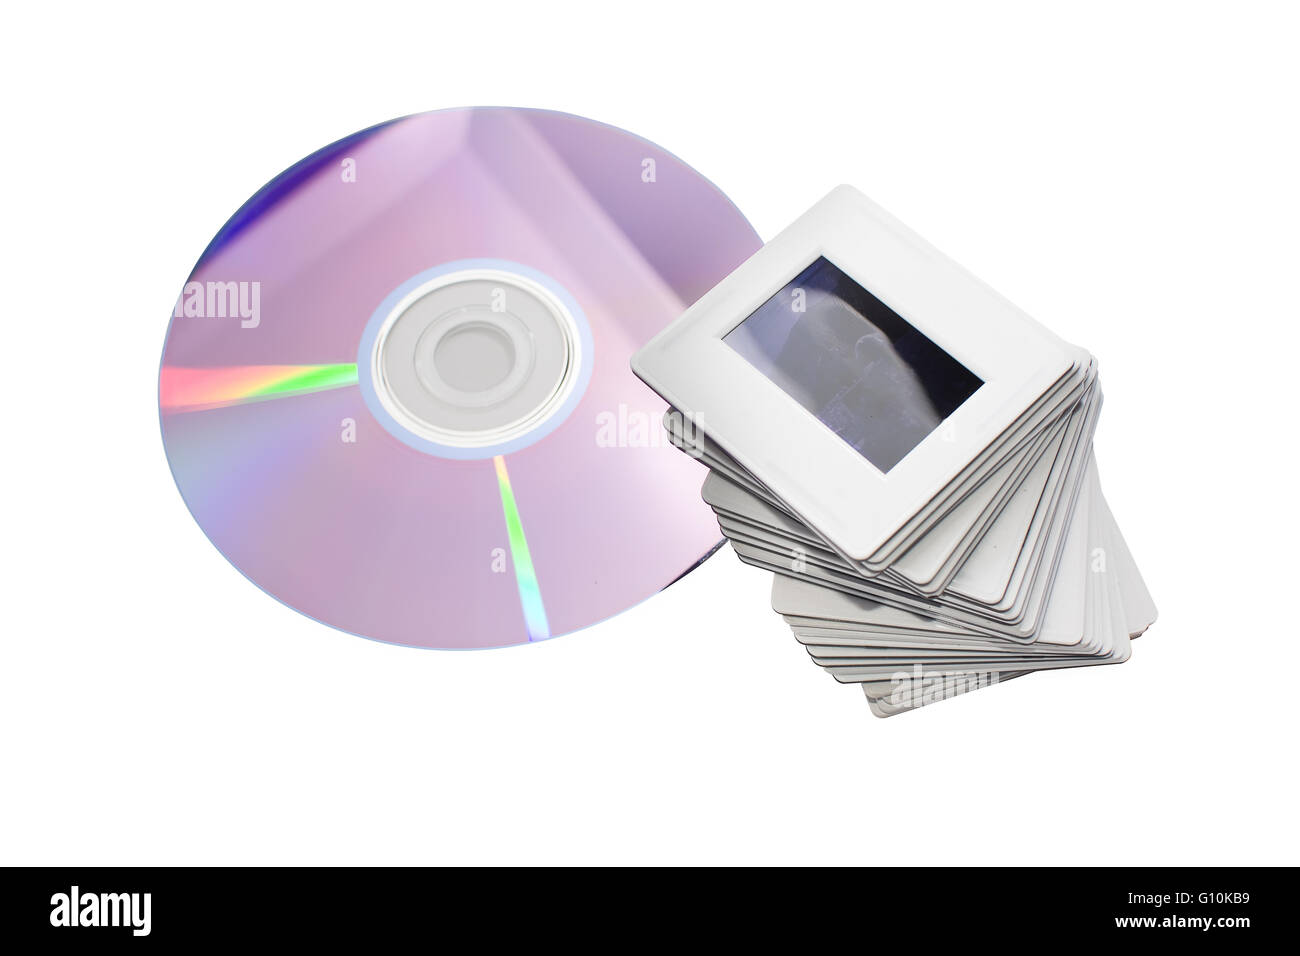 Vieilles diapositives et nouveau dvd : deux systèmes d'archivage d'images Banque D'Images